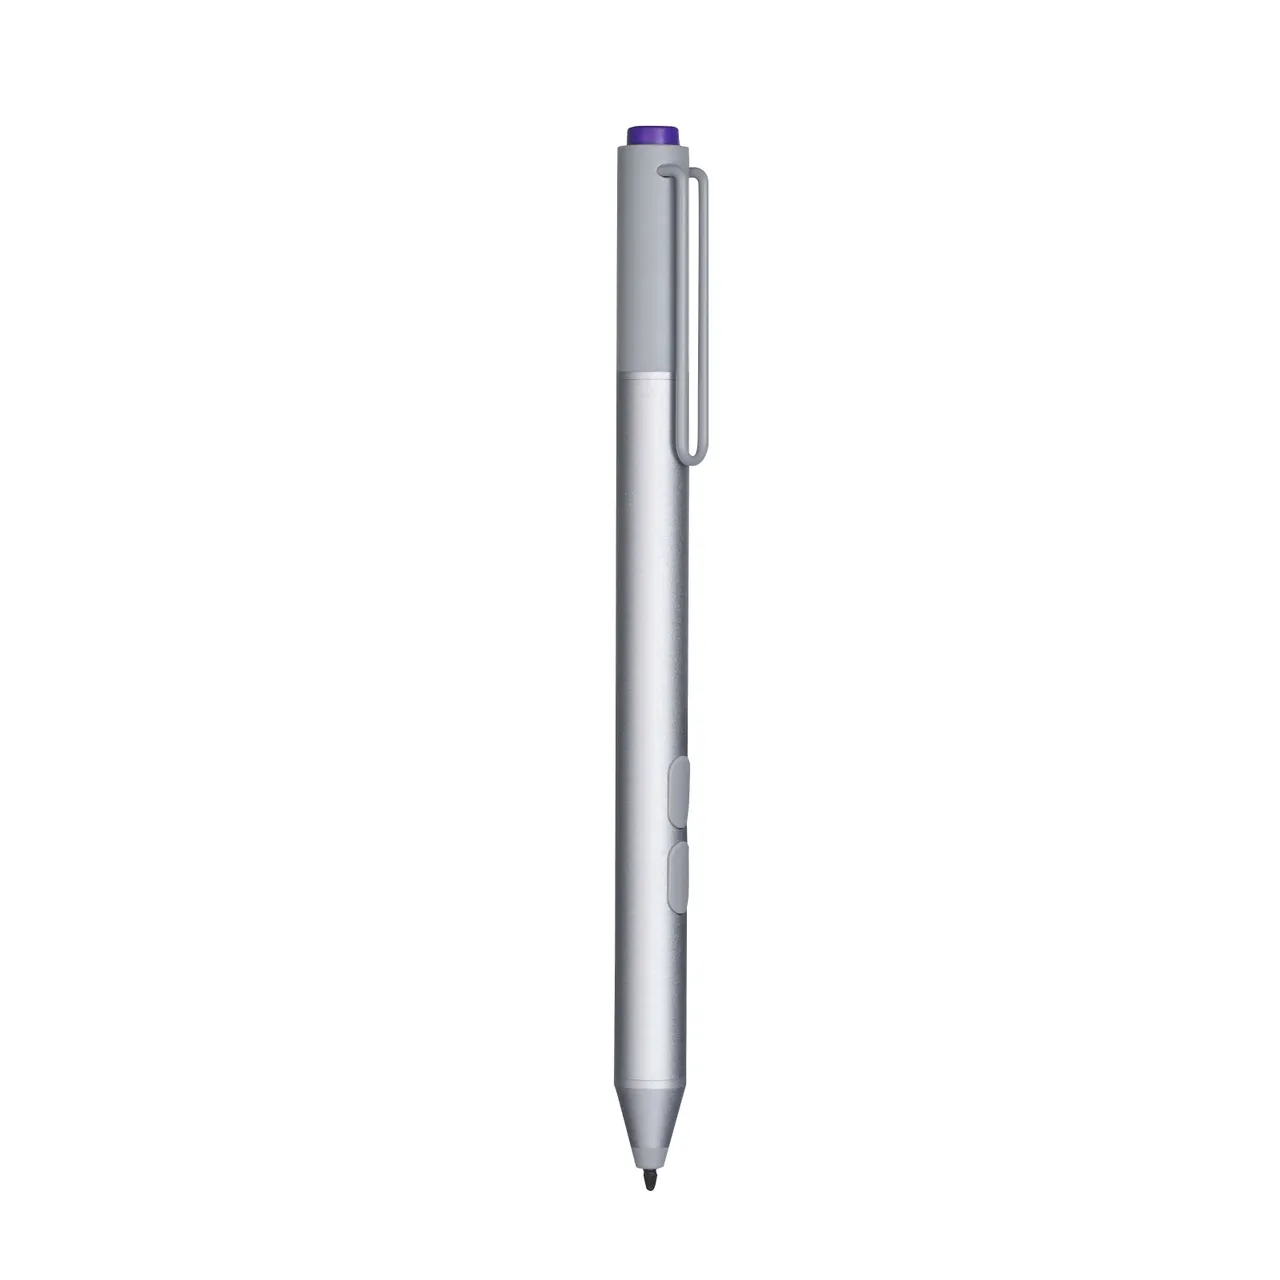 Surface Pro 3 Pen - purple button & new batteries photo 1